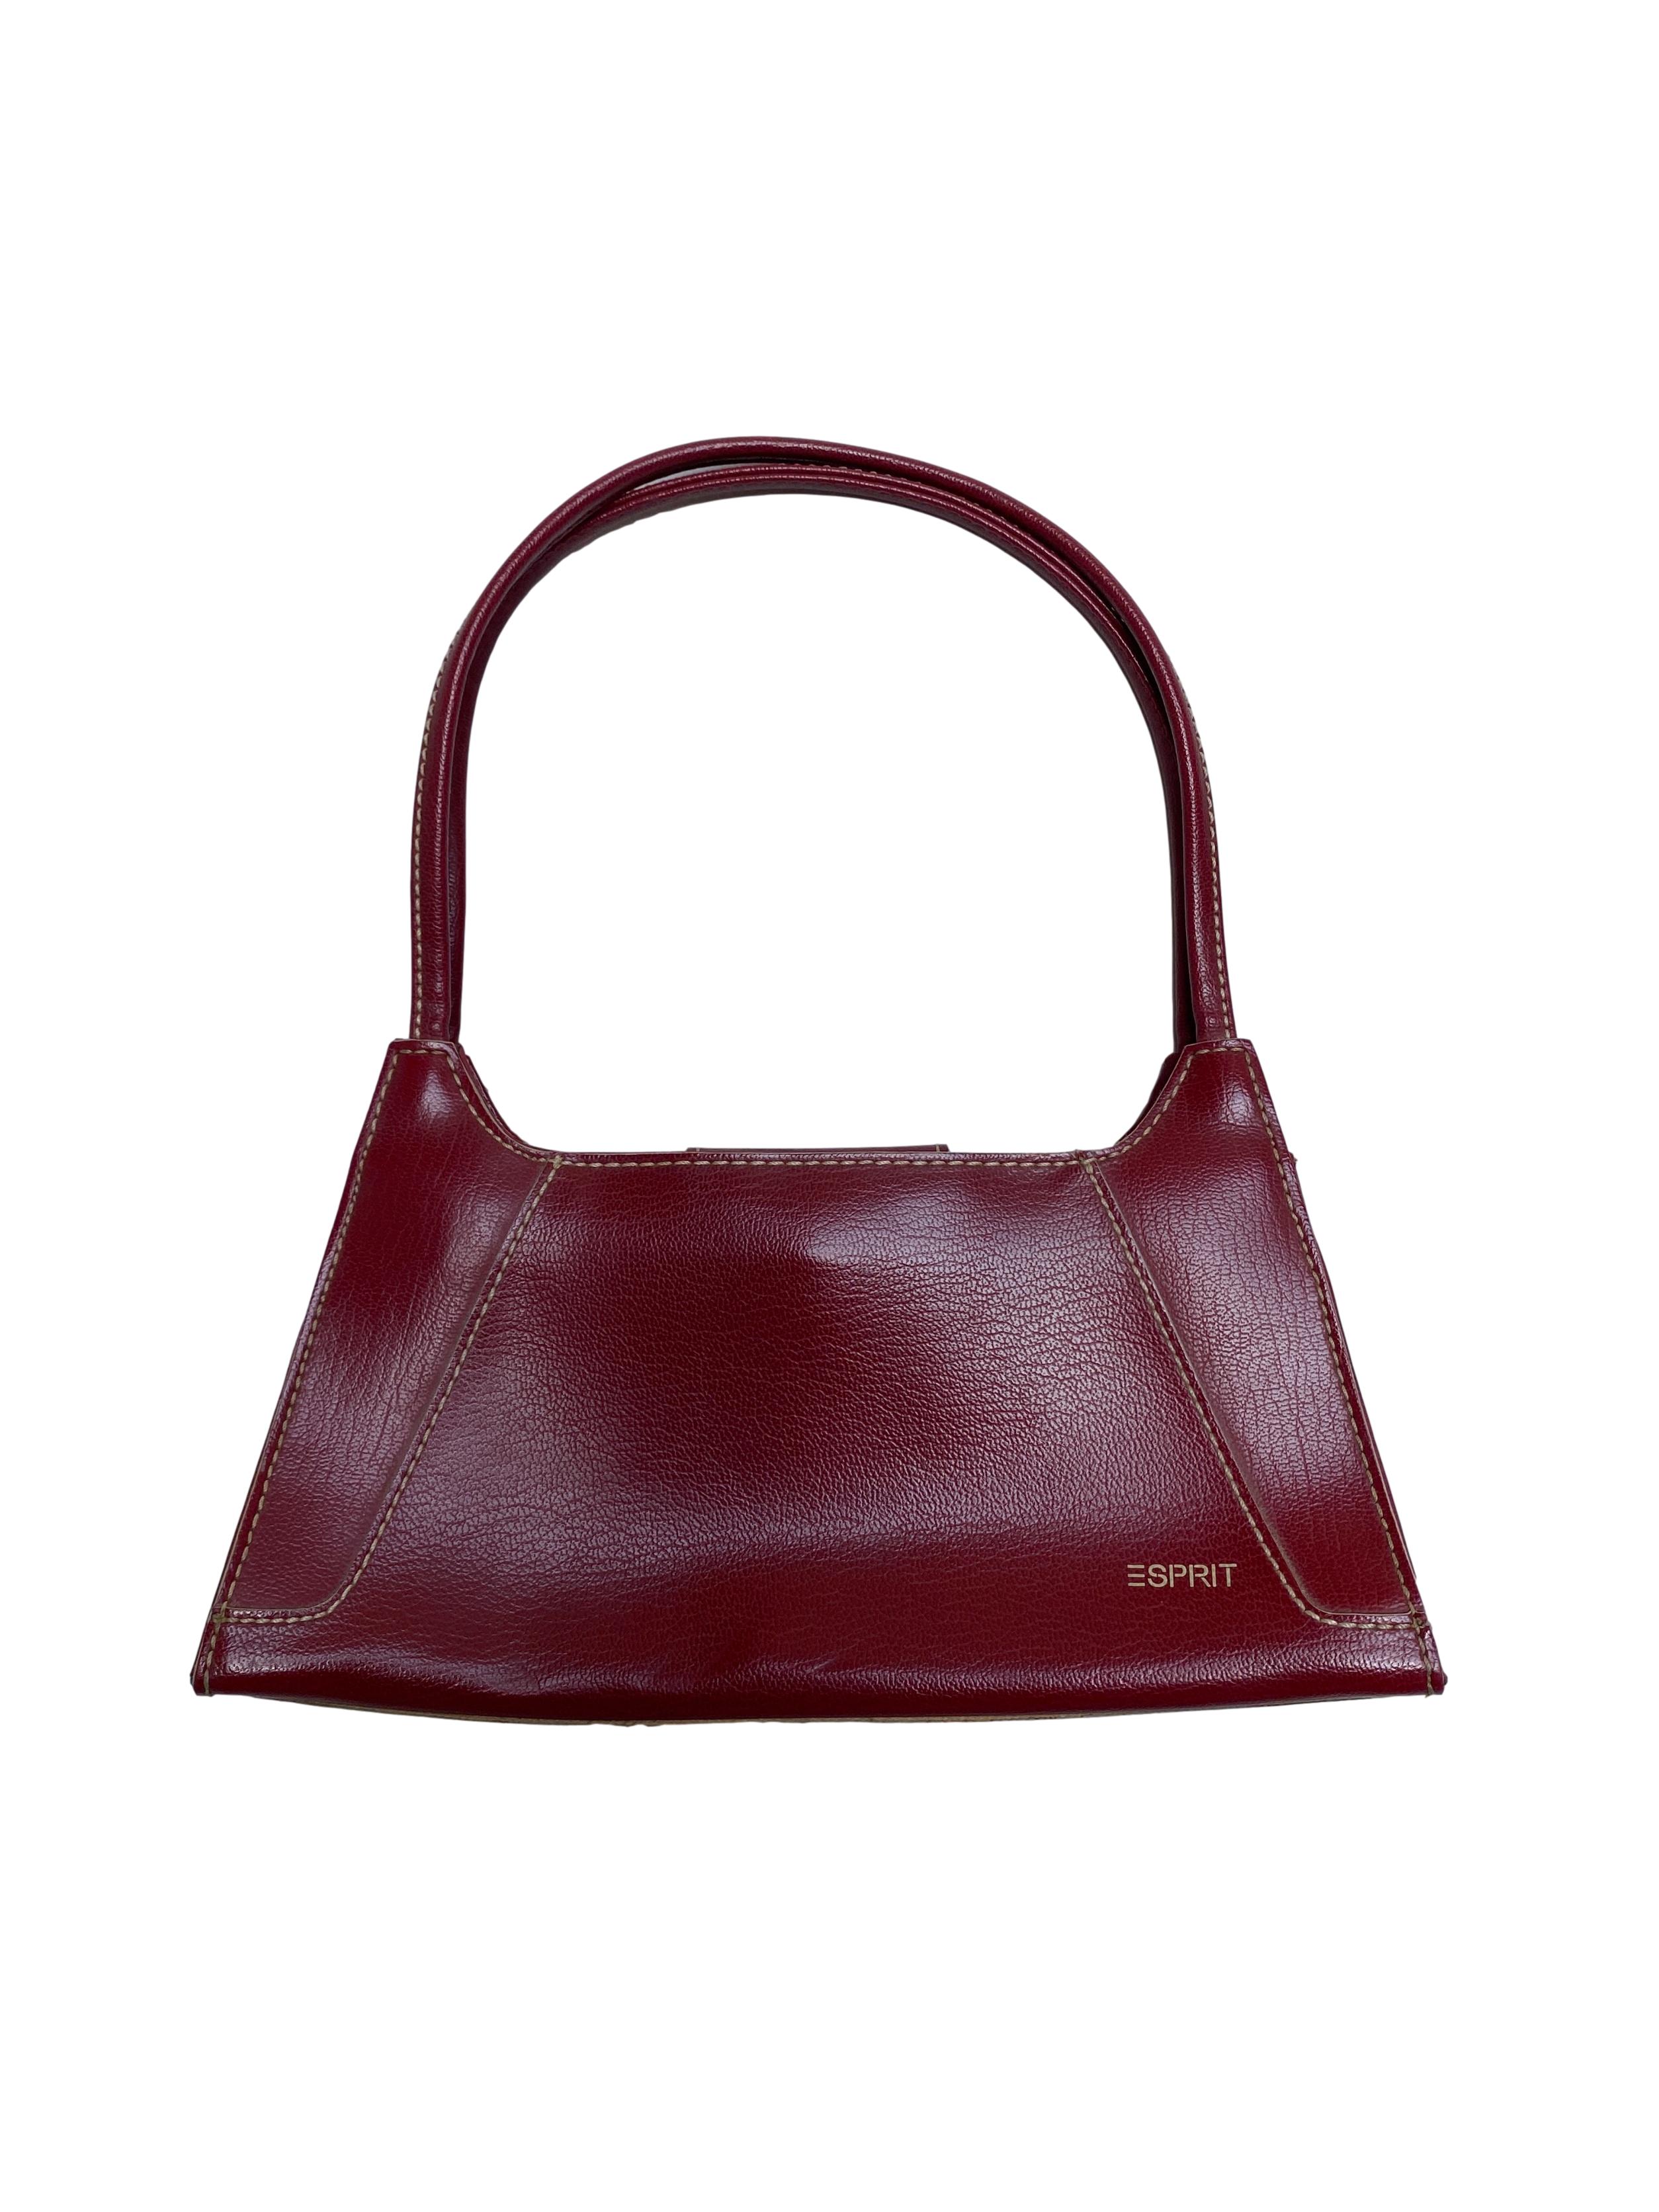 Baguette bag Esprit de polipiel guinda y costuras crema, forro interior y cierra con broche imantado. Medidas 25x14x5cm